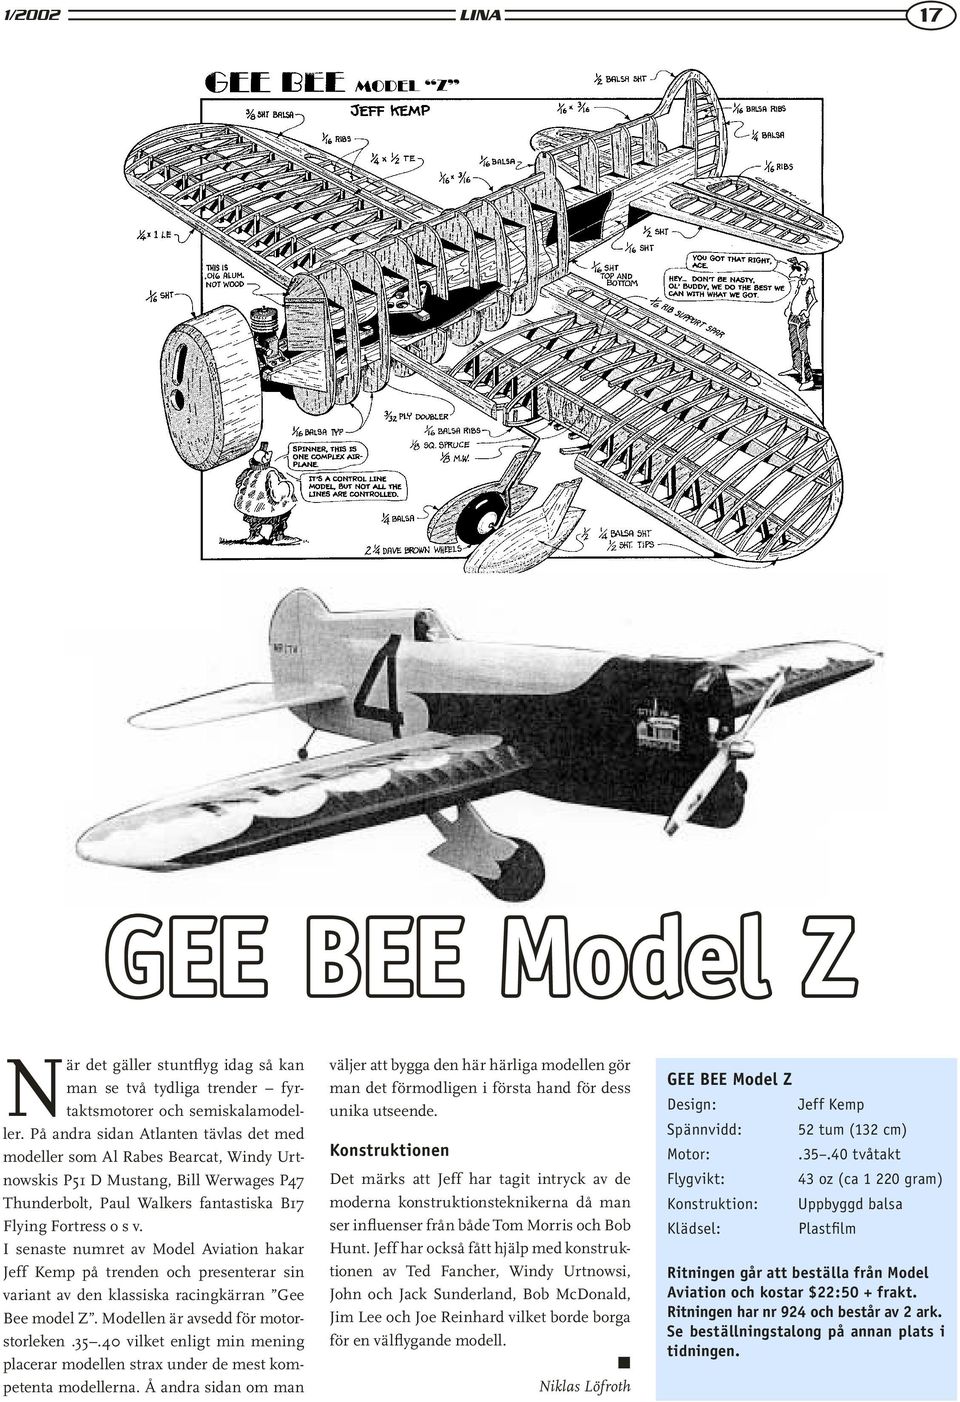 I senaste numret av Model Aviation hakar Jeff Kemp på trenden och presenterar sin variant av den klassiska racingkärran Gee Bee model Z. Modellen är avsedd för motorstorleken.35.